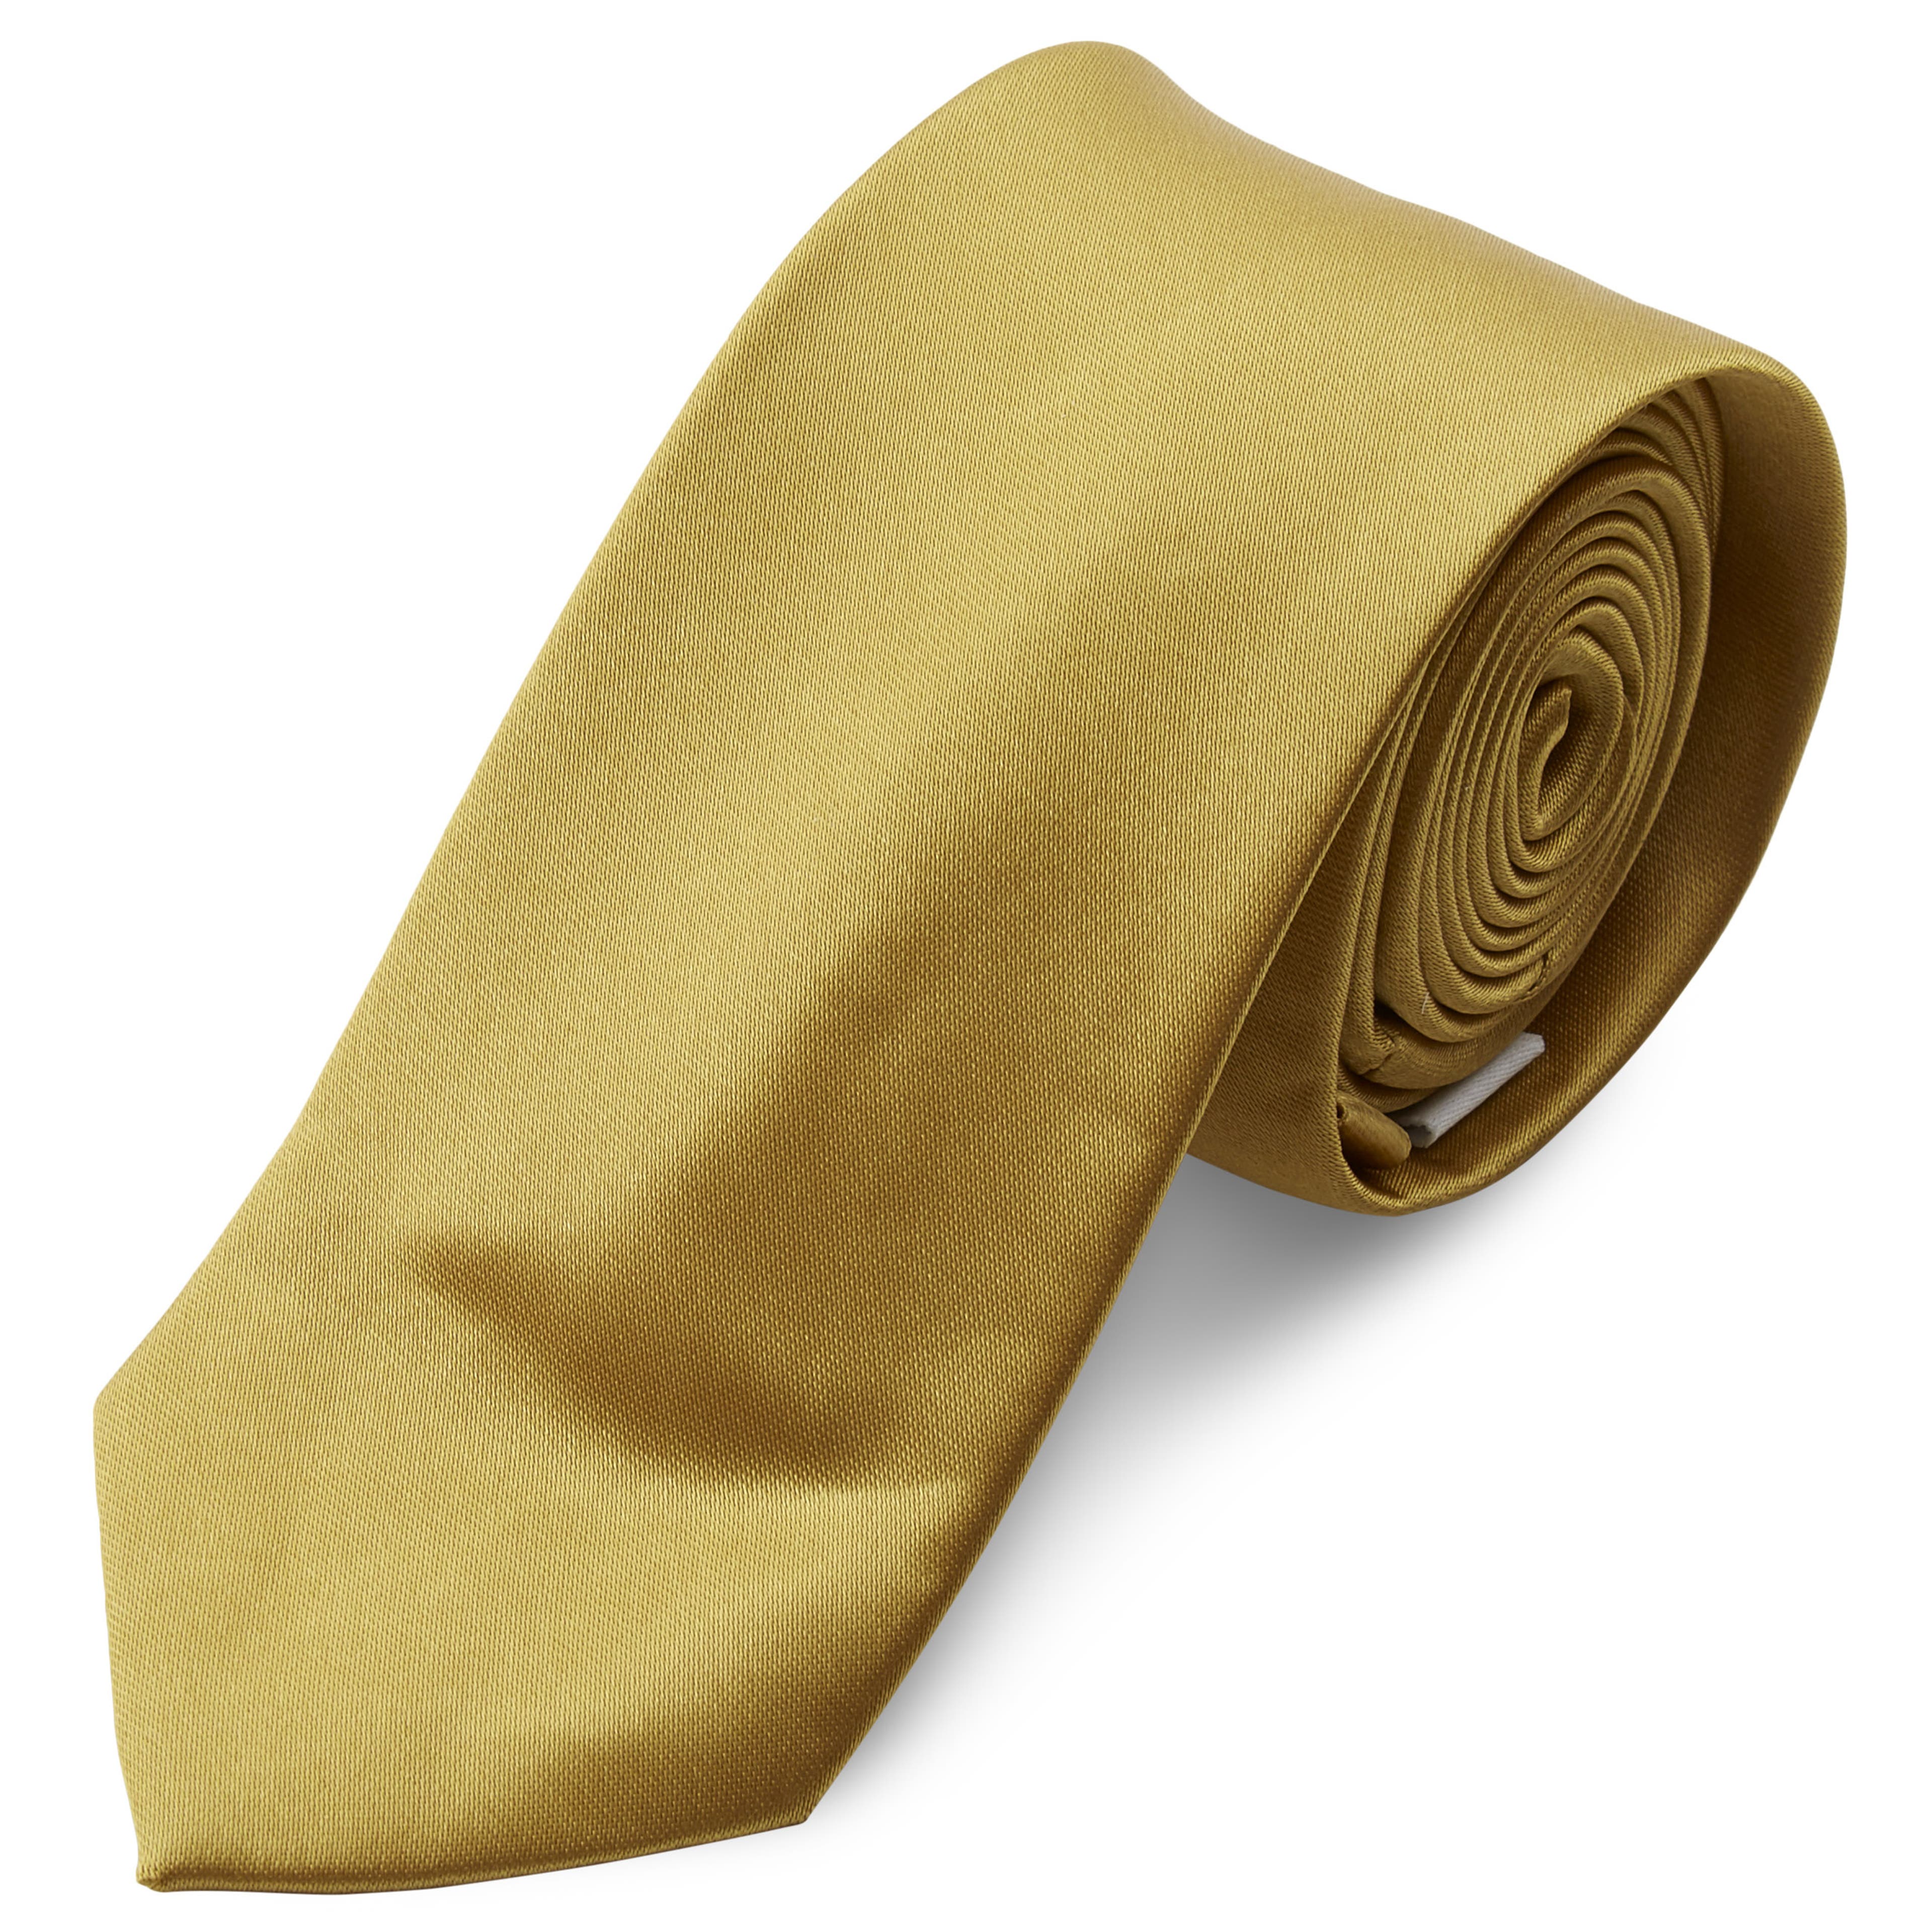 Cravate unie or brillant - 6 cm